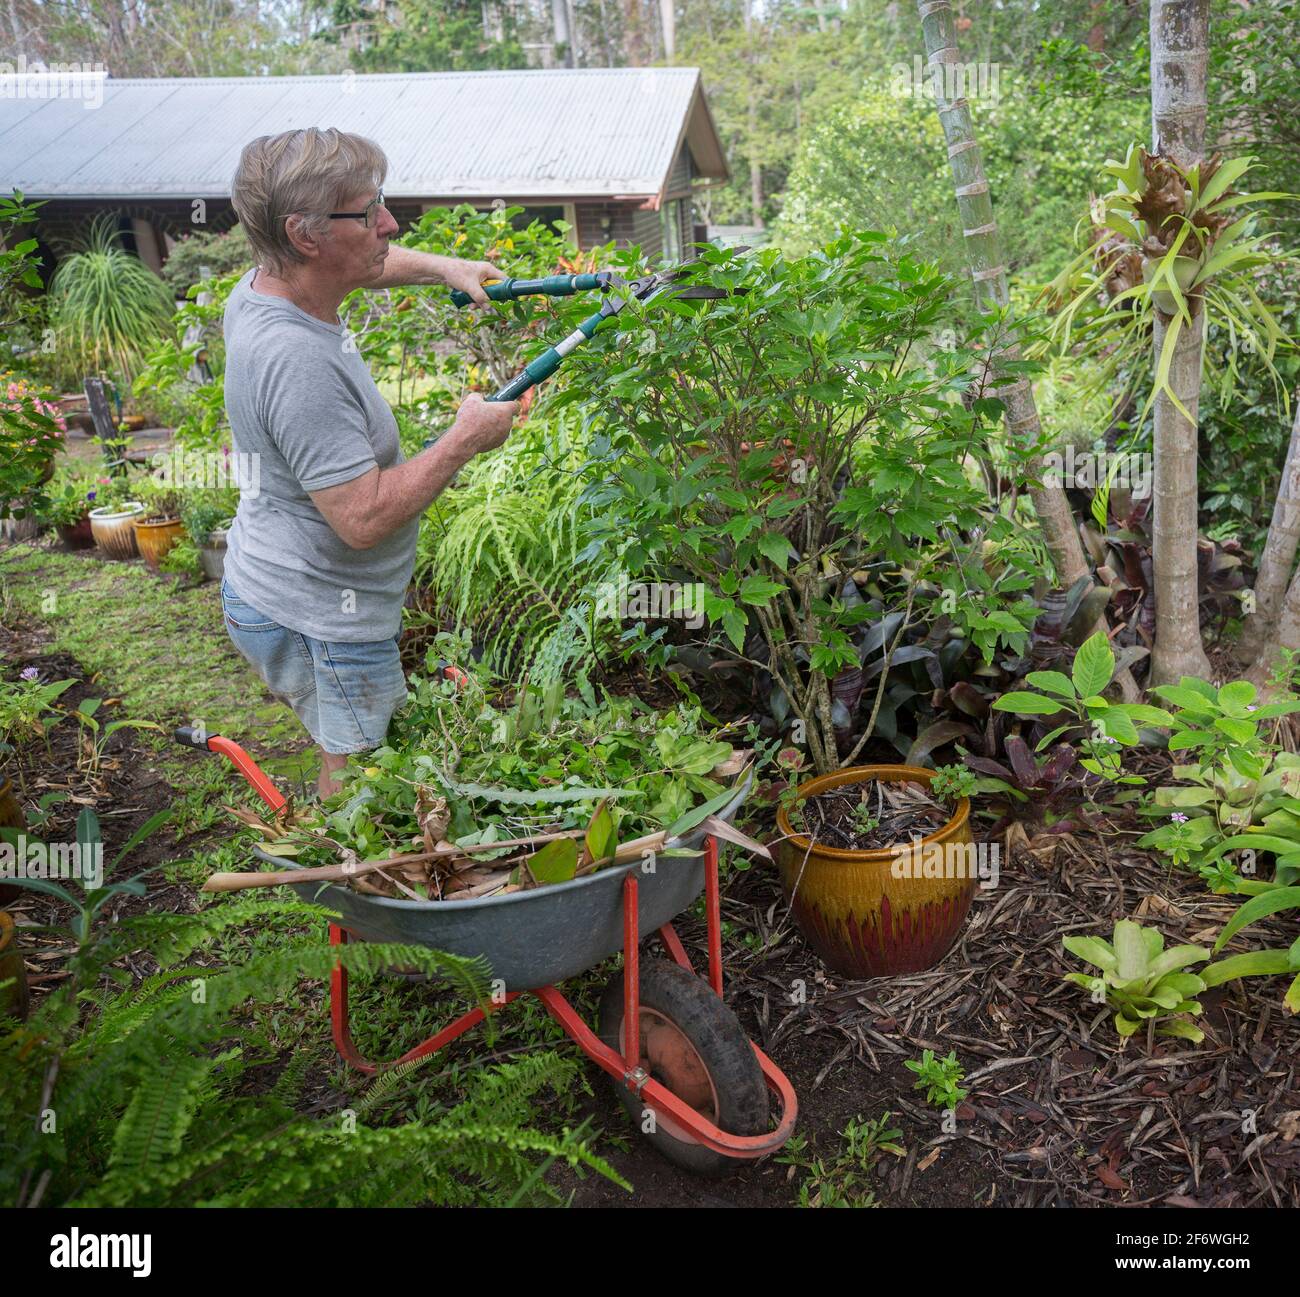 Hombre, un jardinero, usando cizallas para podar arbustos con material vegetal colado en una carretilla cercana en un jardín australiano Foto de stock